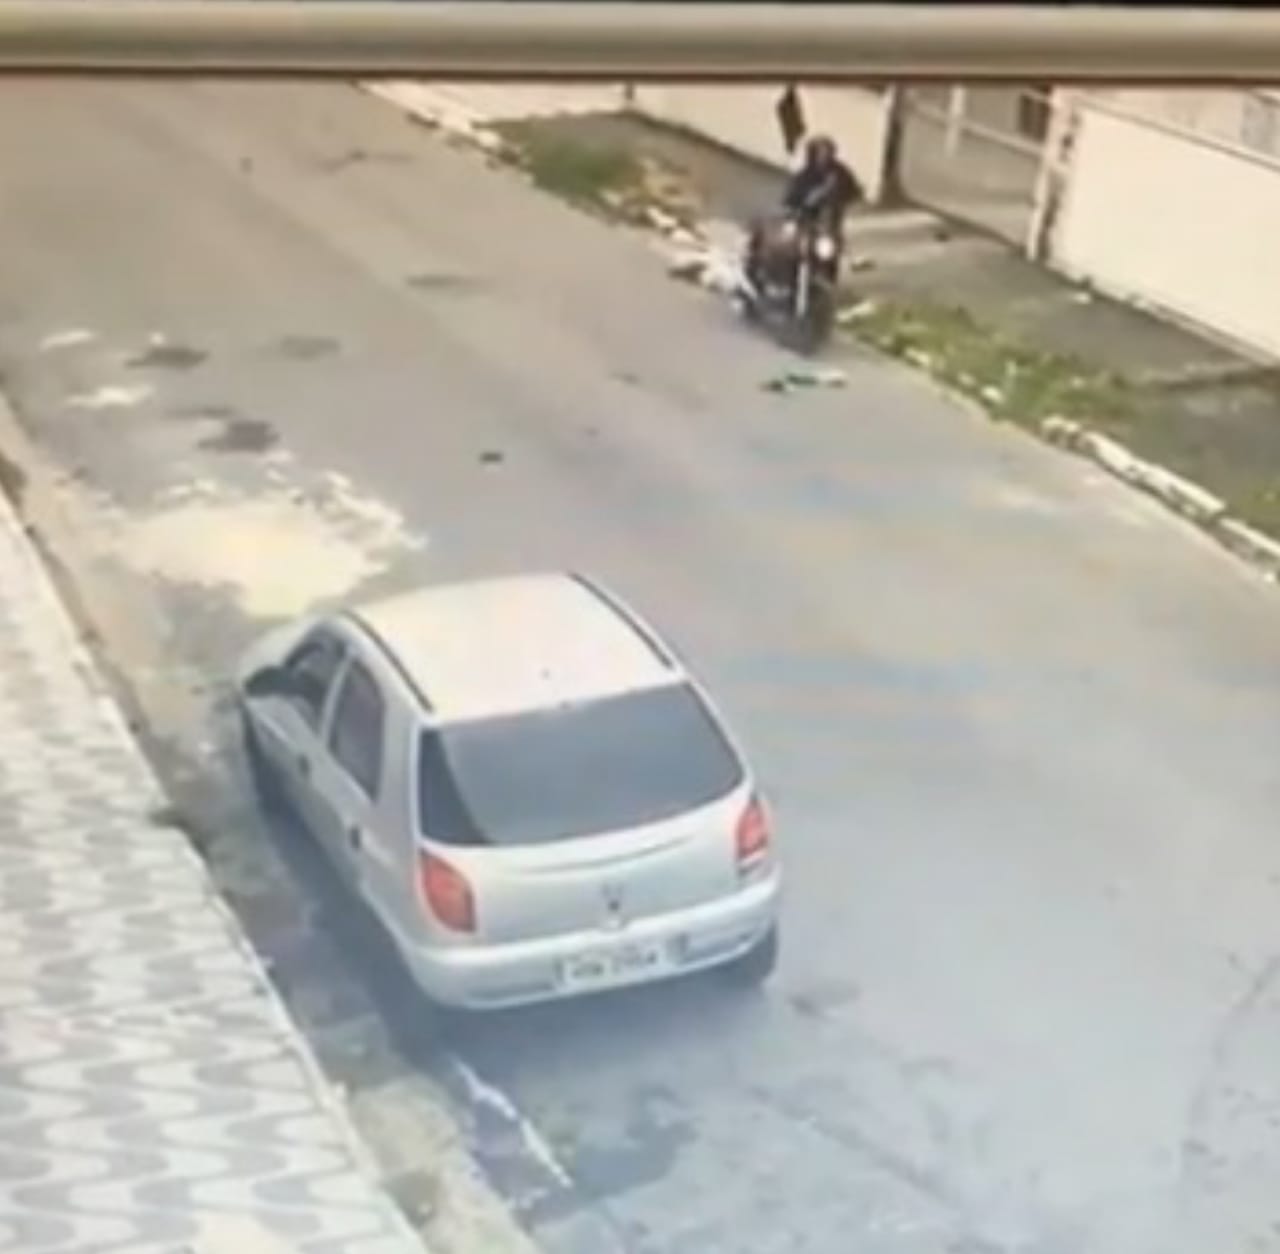 Um homem que estava parado na rua foi atingido por uma moto após o piloto tentar empinar e perder o controle, em São Paulo. (Foto: reprodução)